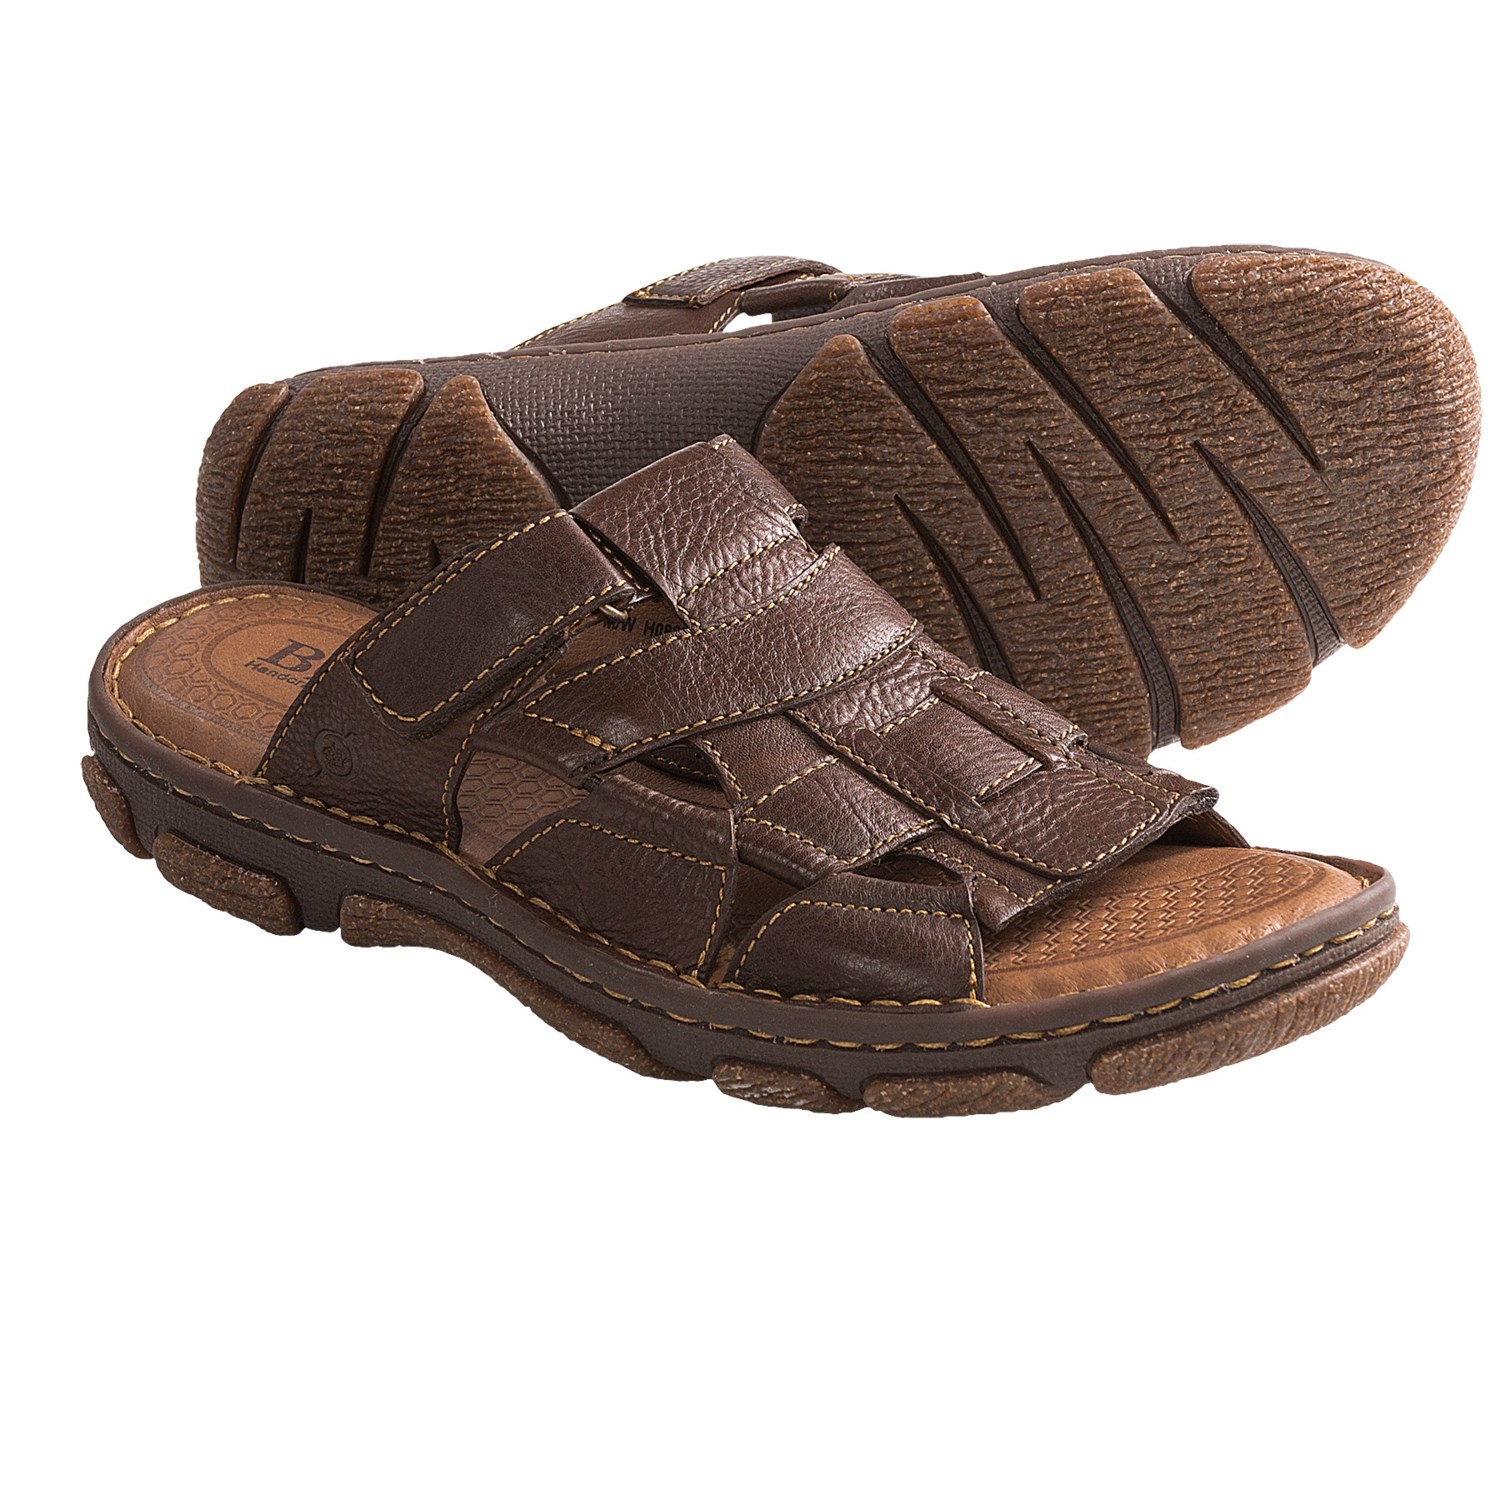 Born Fraser Sandals - Leather (For Men) in Walnut Full Grain